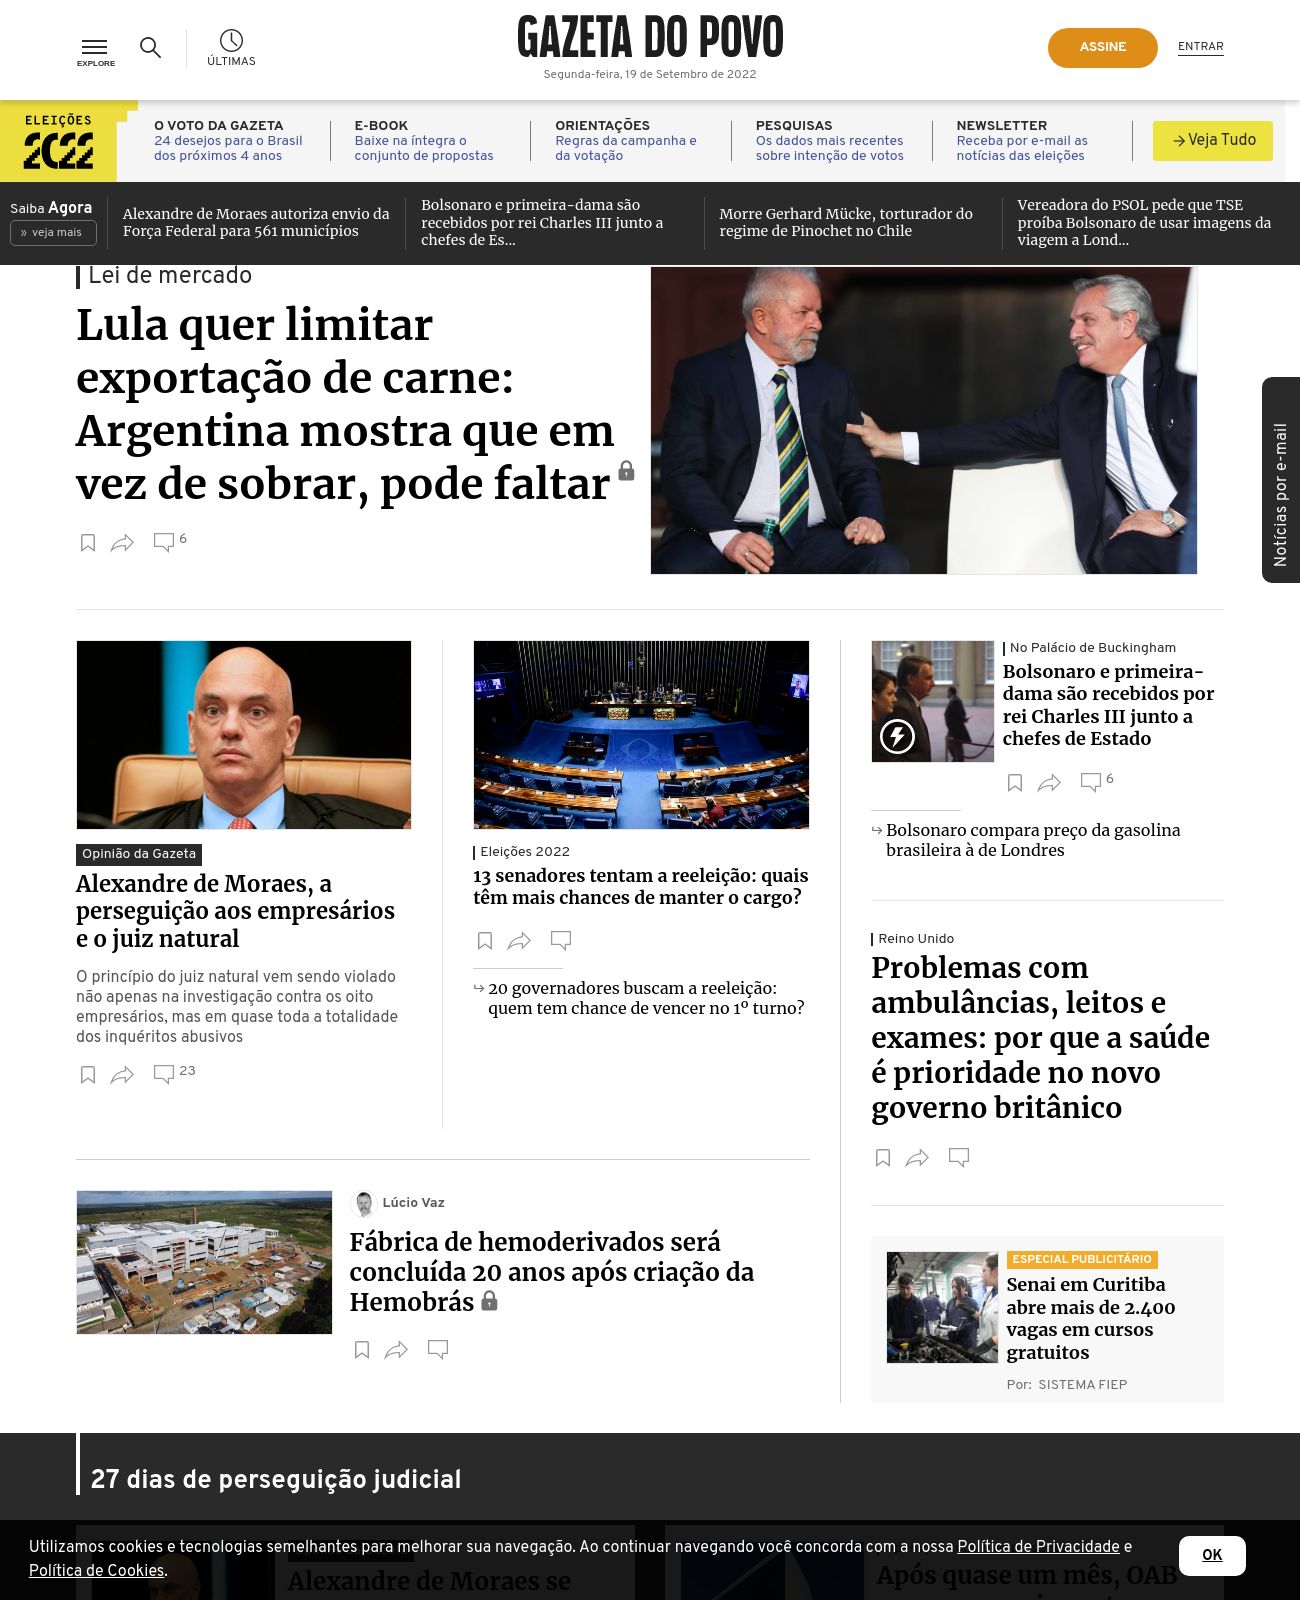 Gazeta do Povo at 2022-09-19 01:47:40-03:00 local time